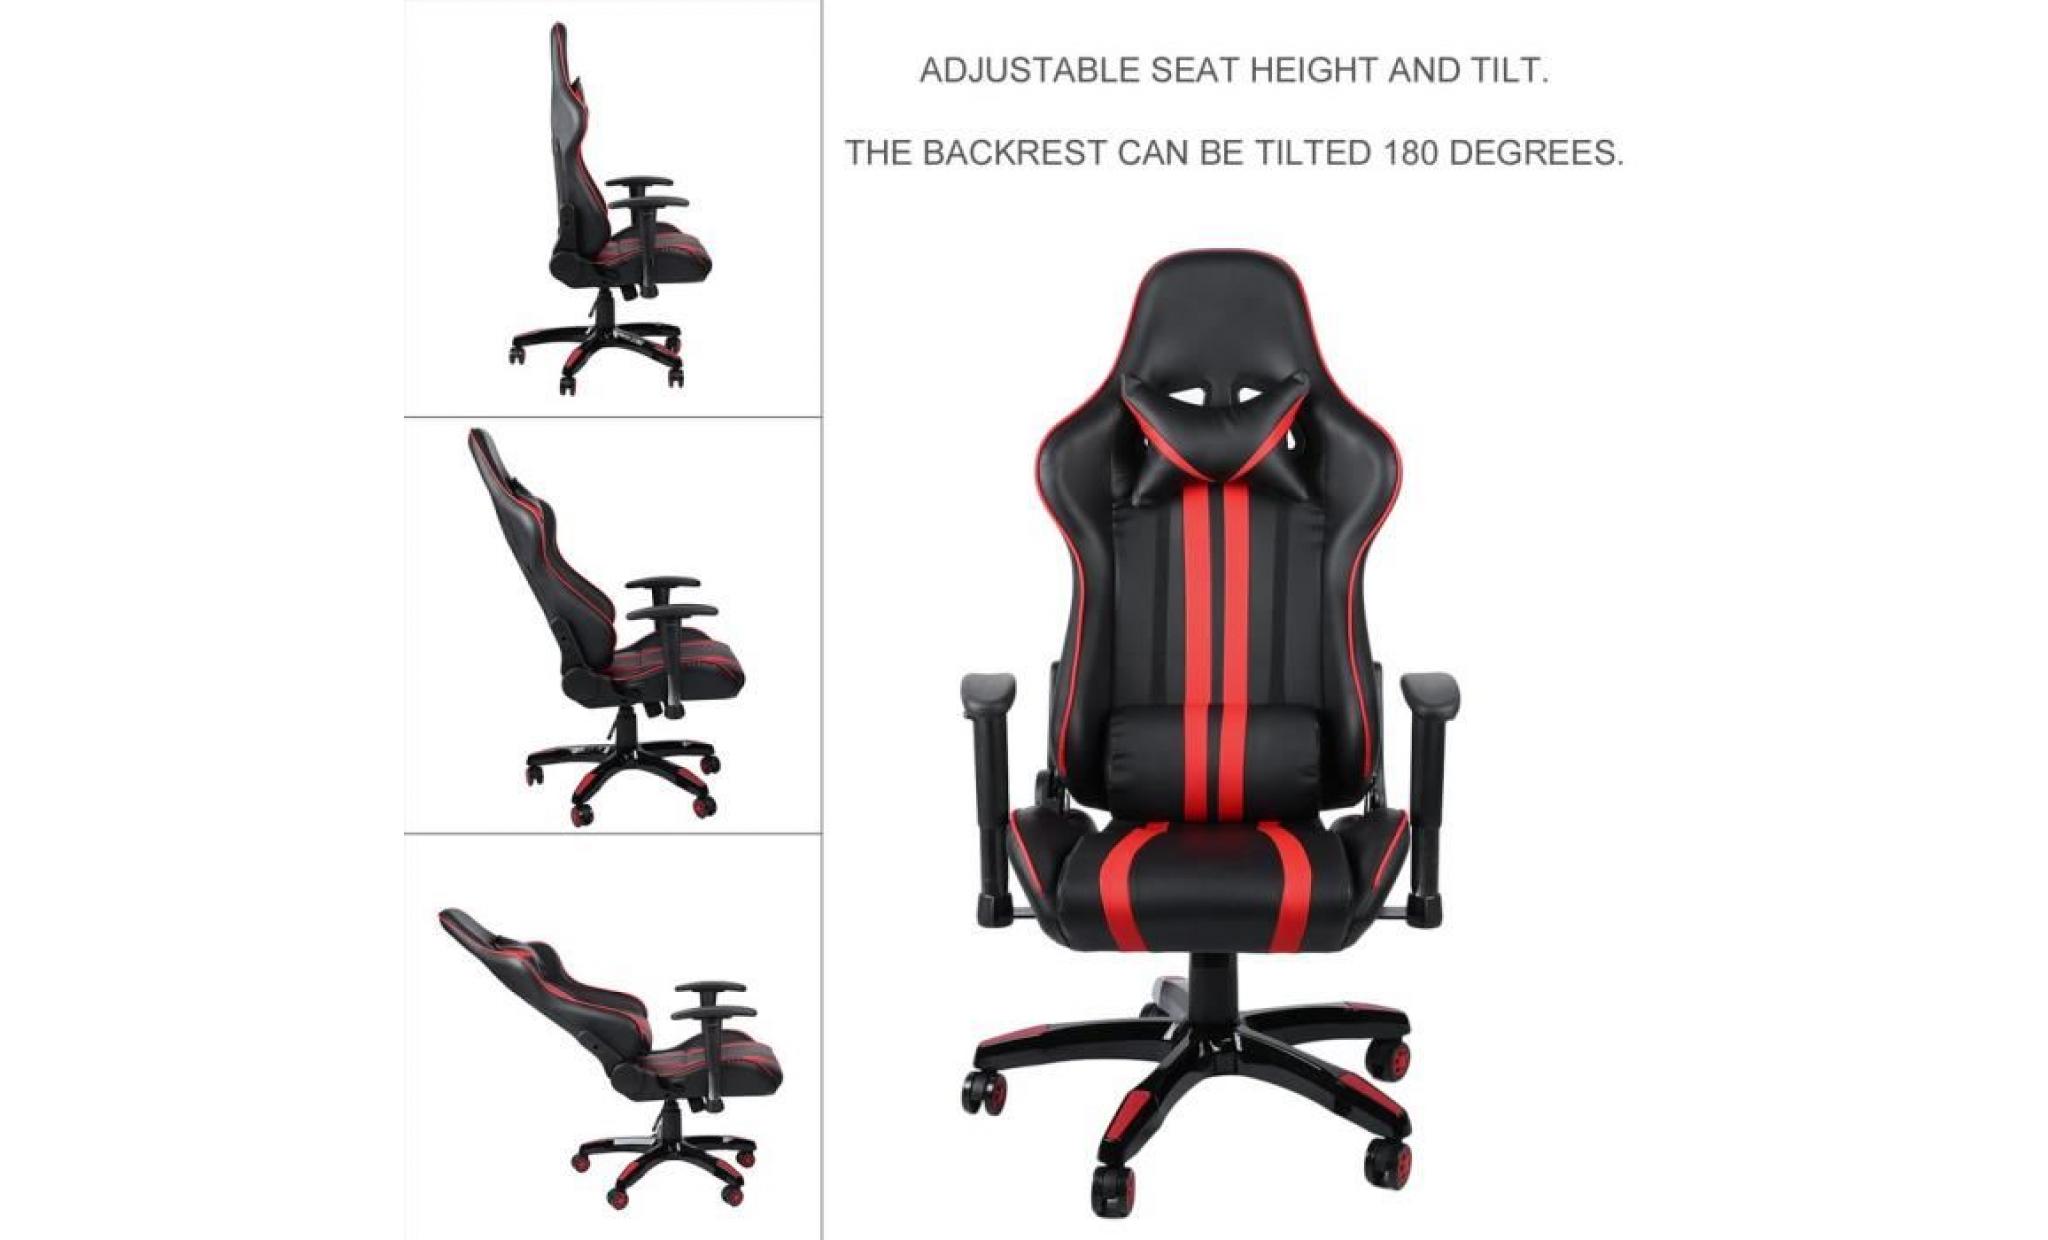 leshp® 2018 siège gaming fauteuil gamer chaise de jeu de bureau roues 360° rotation siège pu rouge et noir pas cher